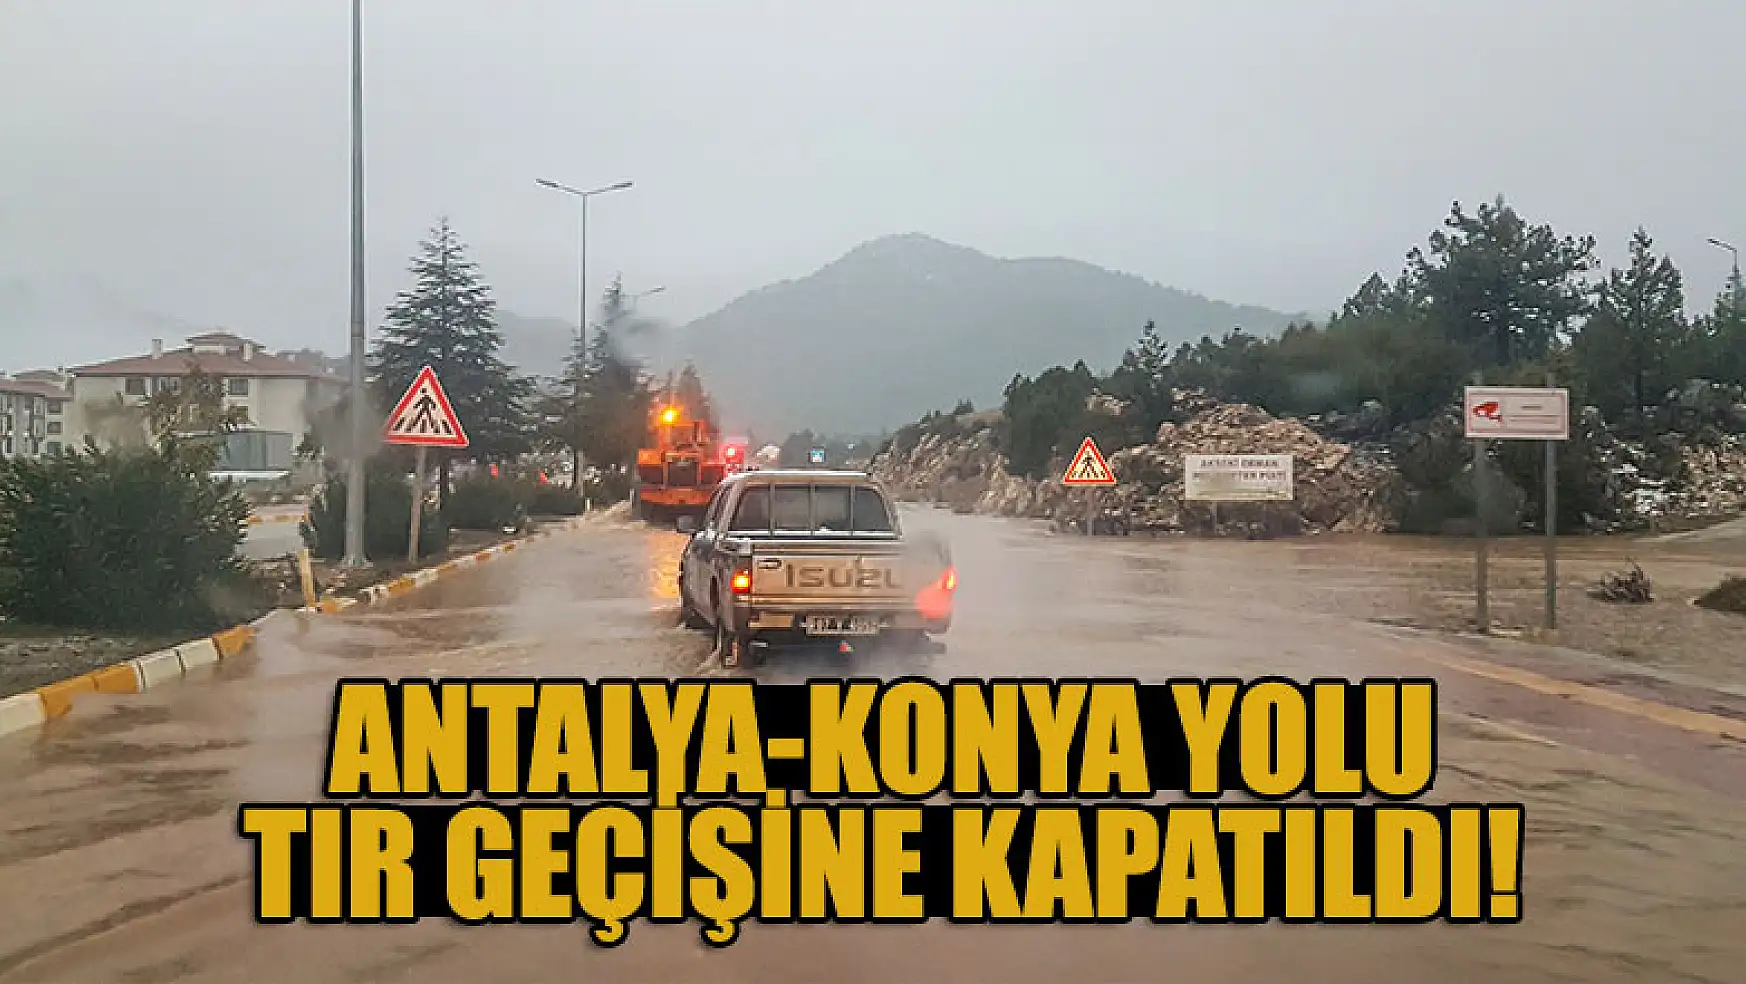 Antalya-Konya yolu tır geçişine kapatıldı!